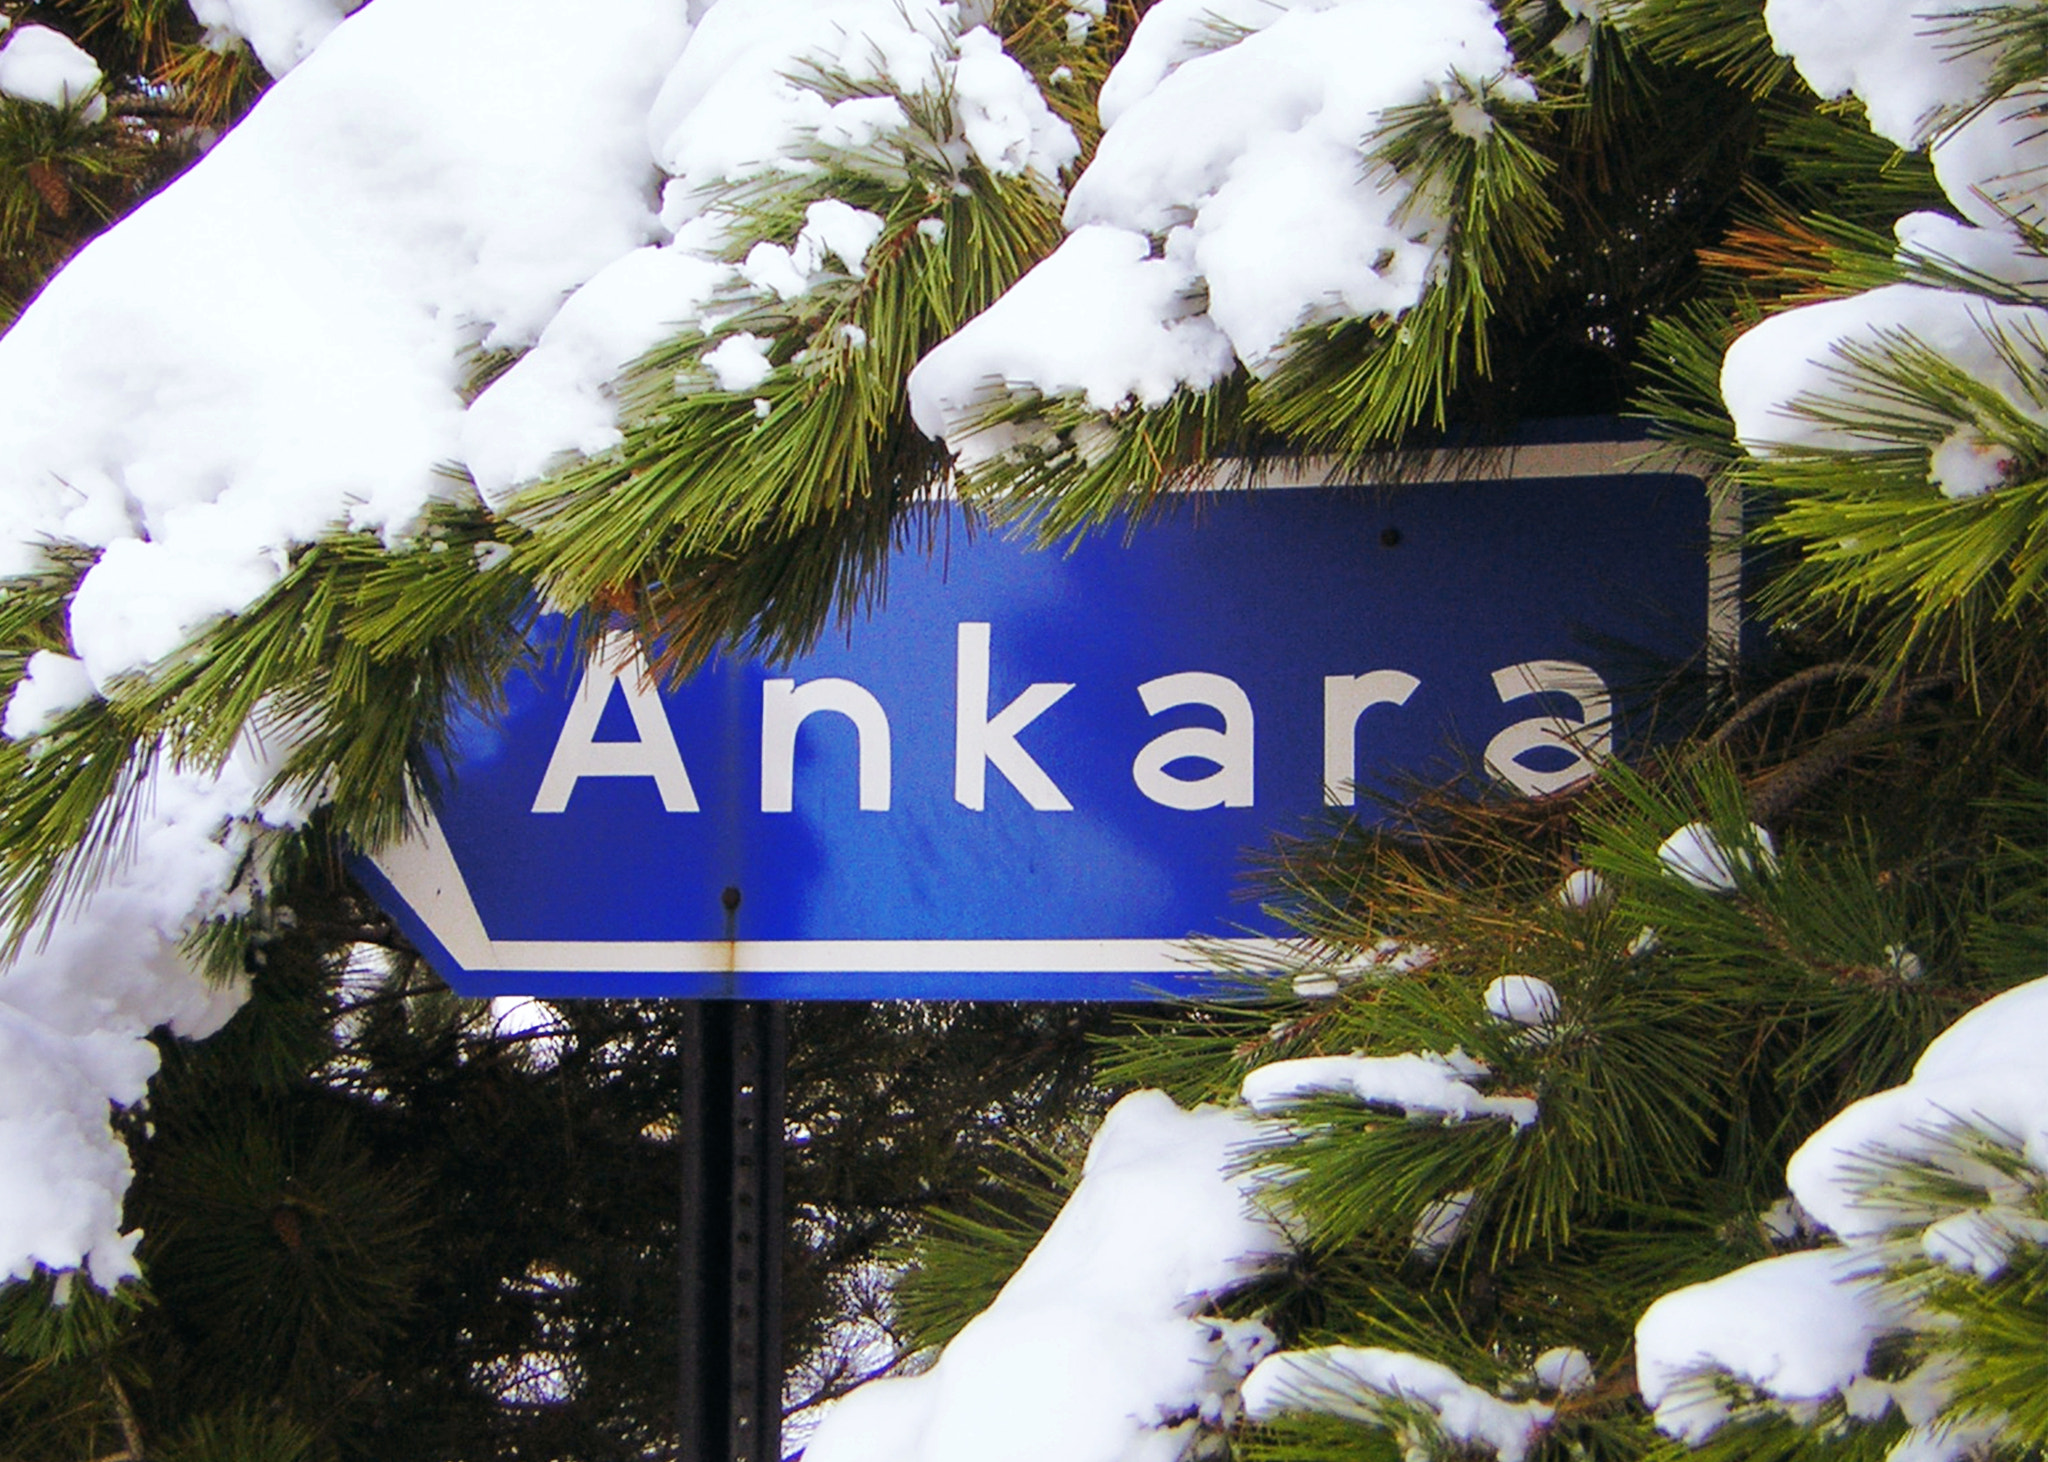 Nikon E2200 sample photo. Direction sign to ankara under snow photography